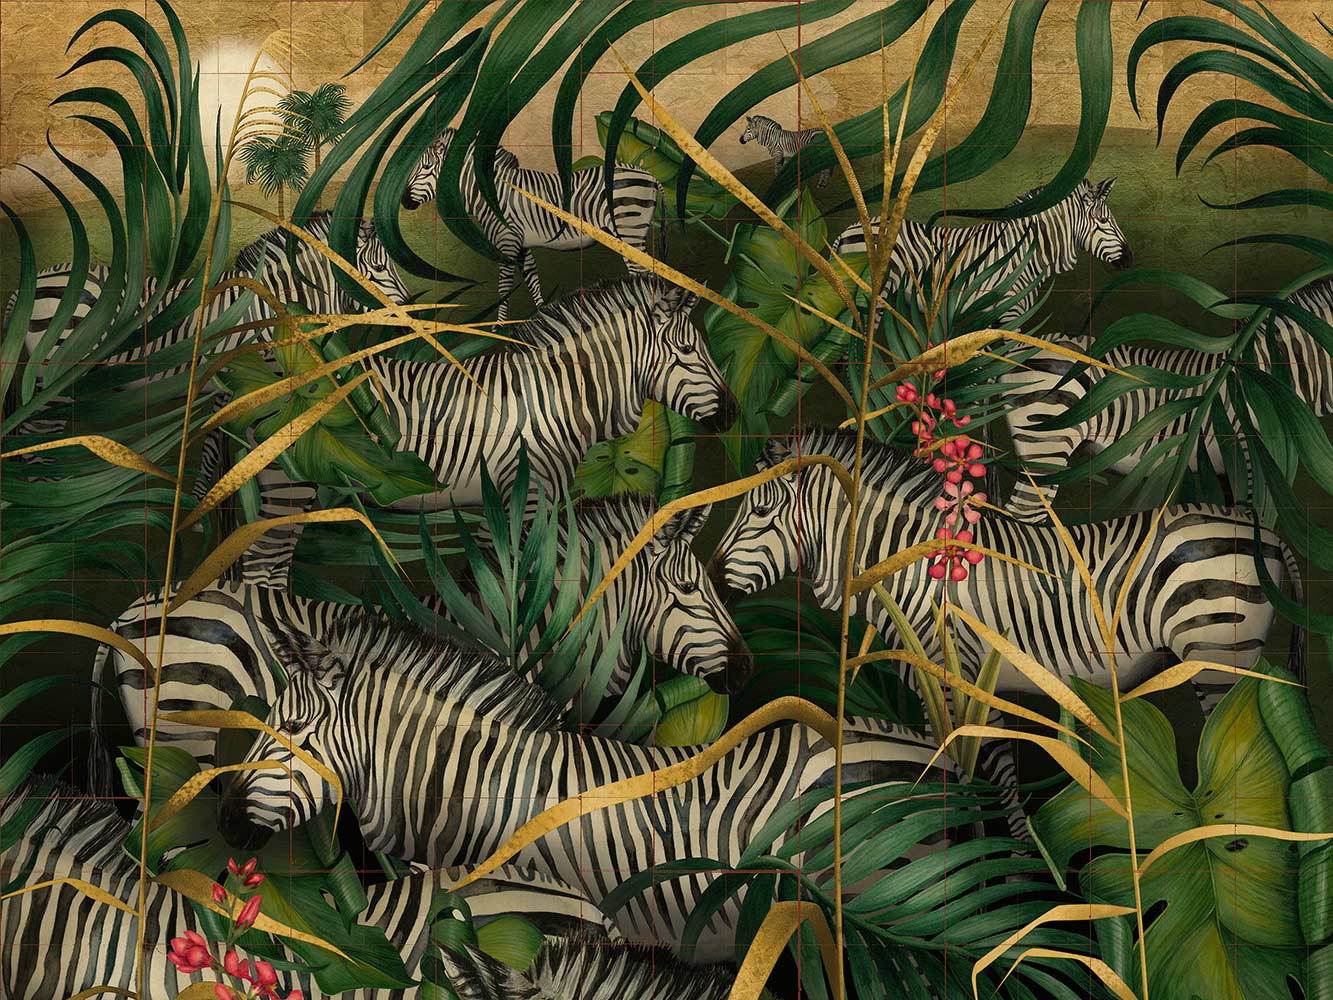 Twilight Zebra design with jungle scene and striped zebra amongst foliage